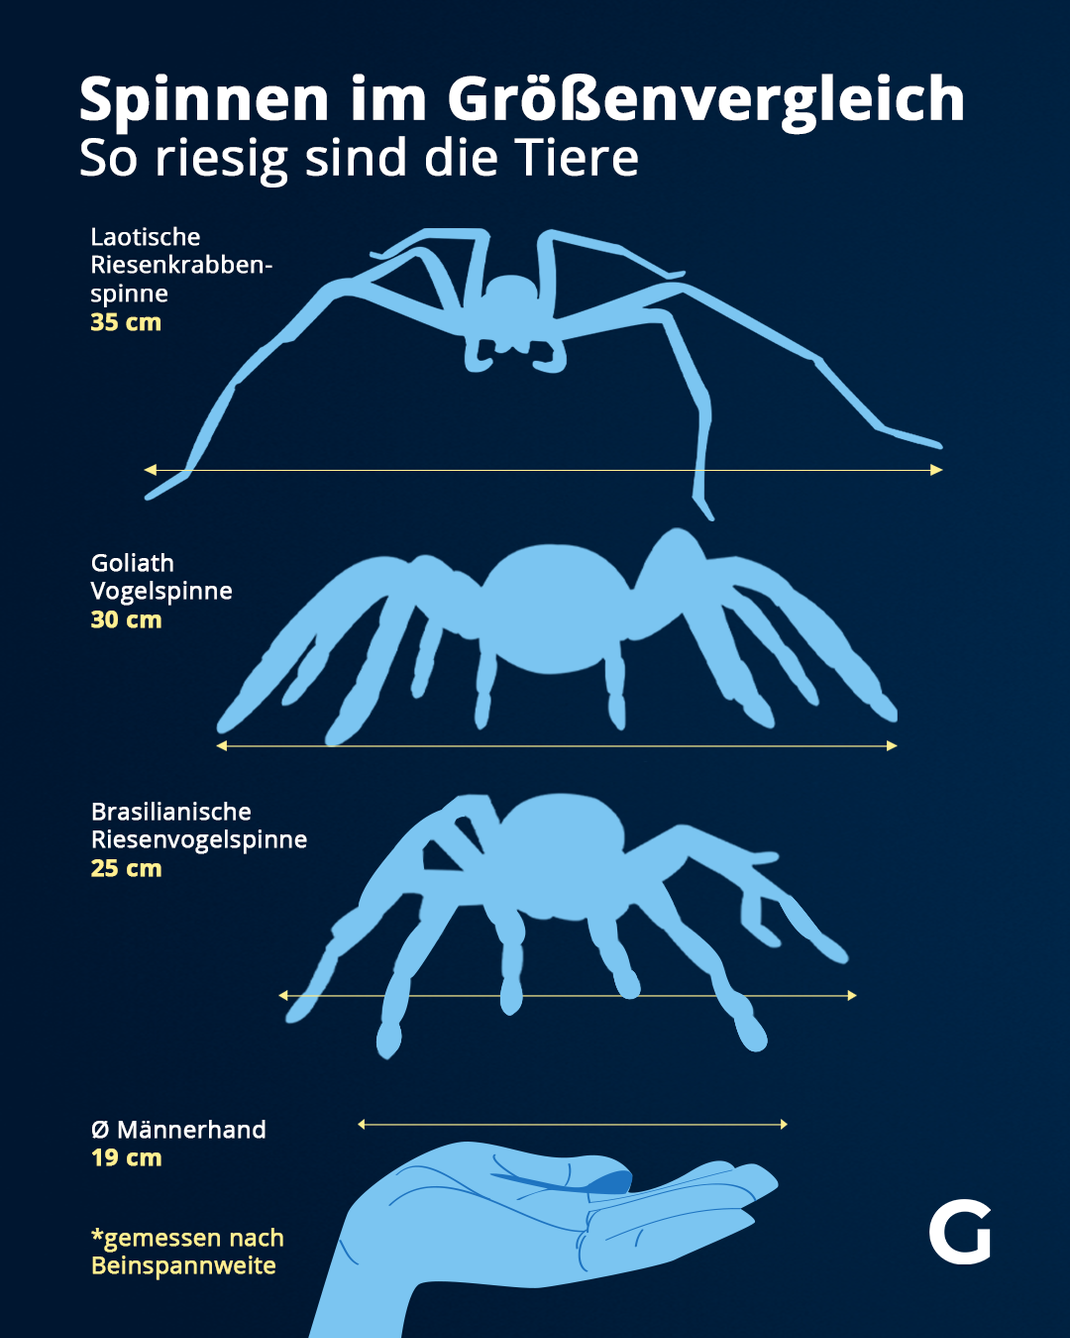 Das sind die größten Spinnen gemessen nach ihrer Beinspannweite